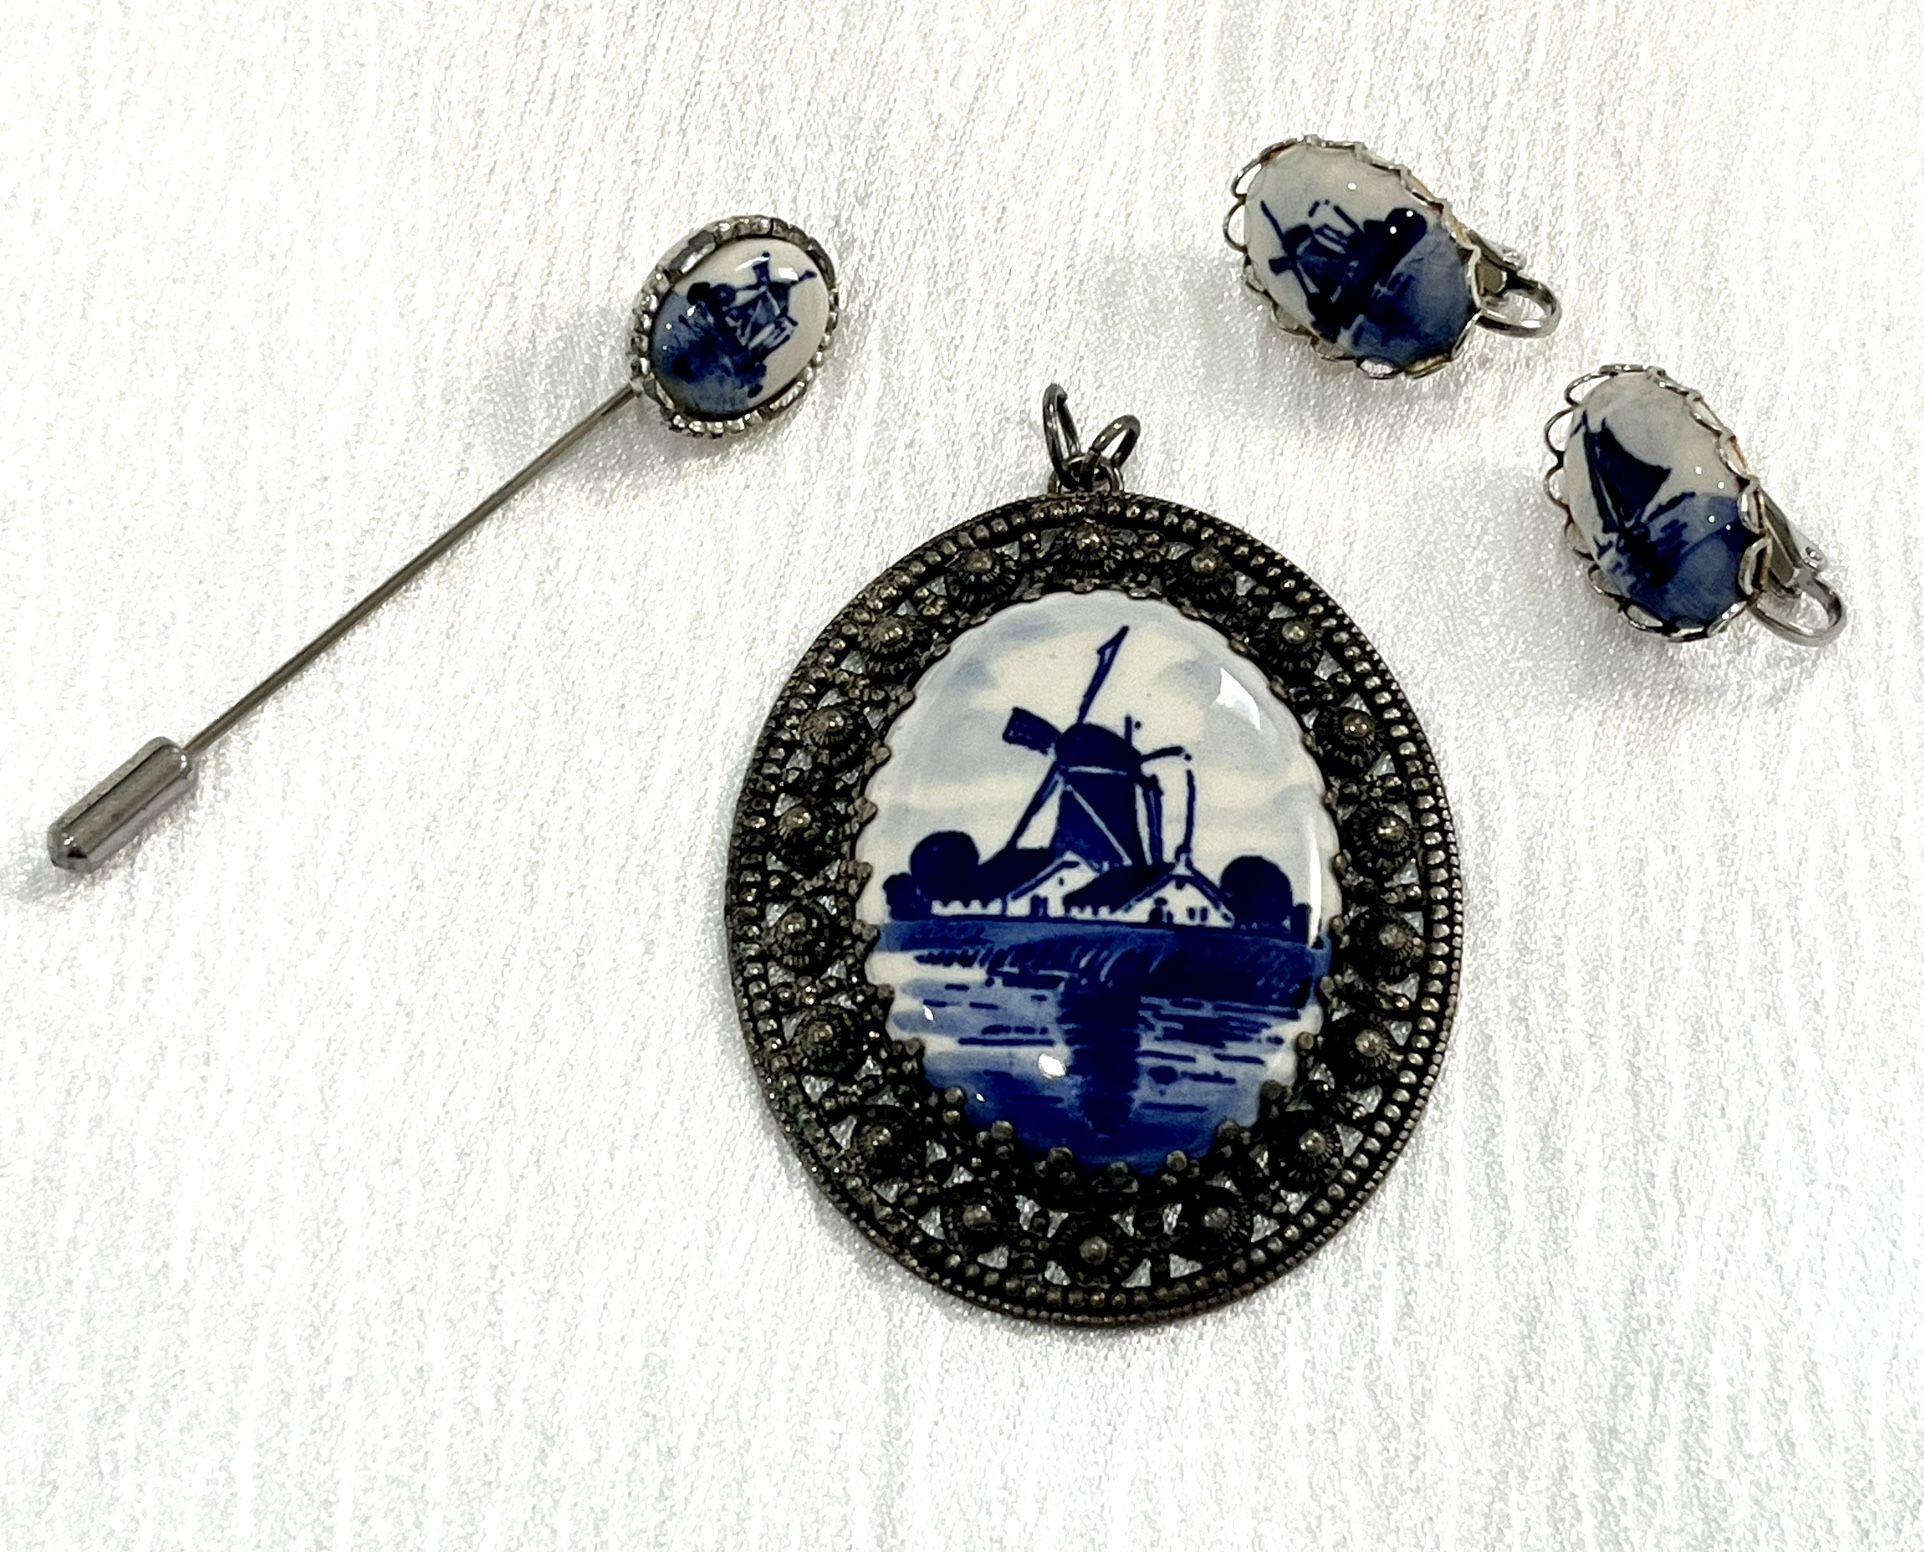  Vintage Jewelry Lot! Delft Blue Windmill, Pendant, Earrings